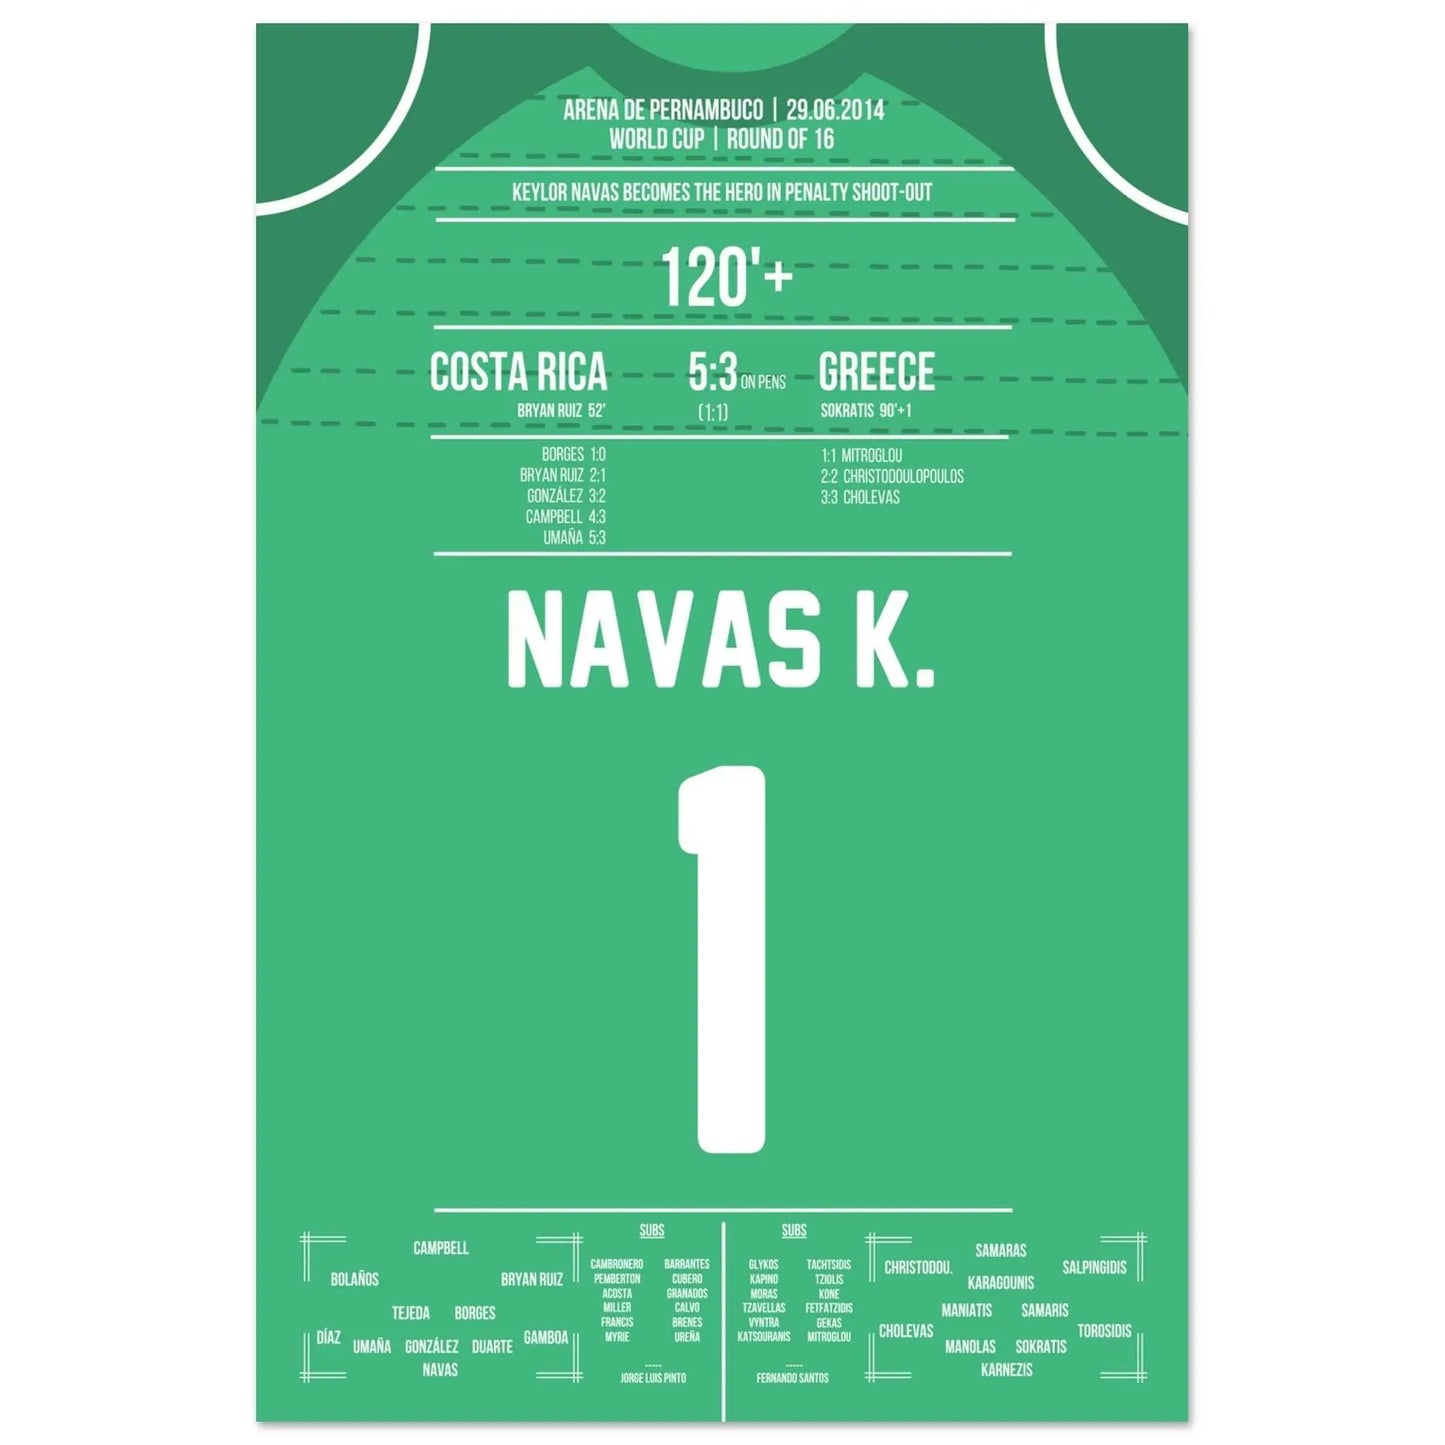 Keylor Navas devient un héros lors des tirs au but | Costa Rica - Grèce Coupe du Monde 2014